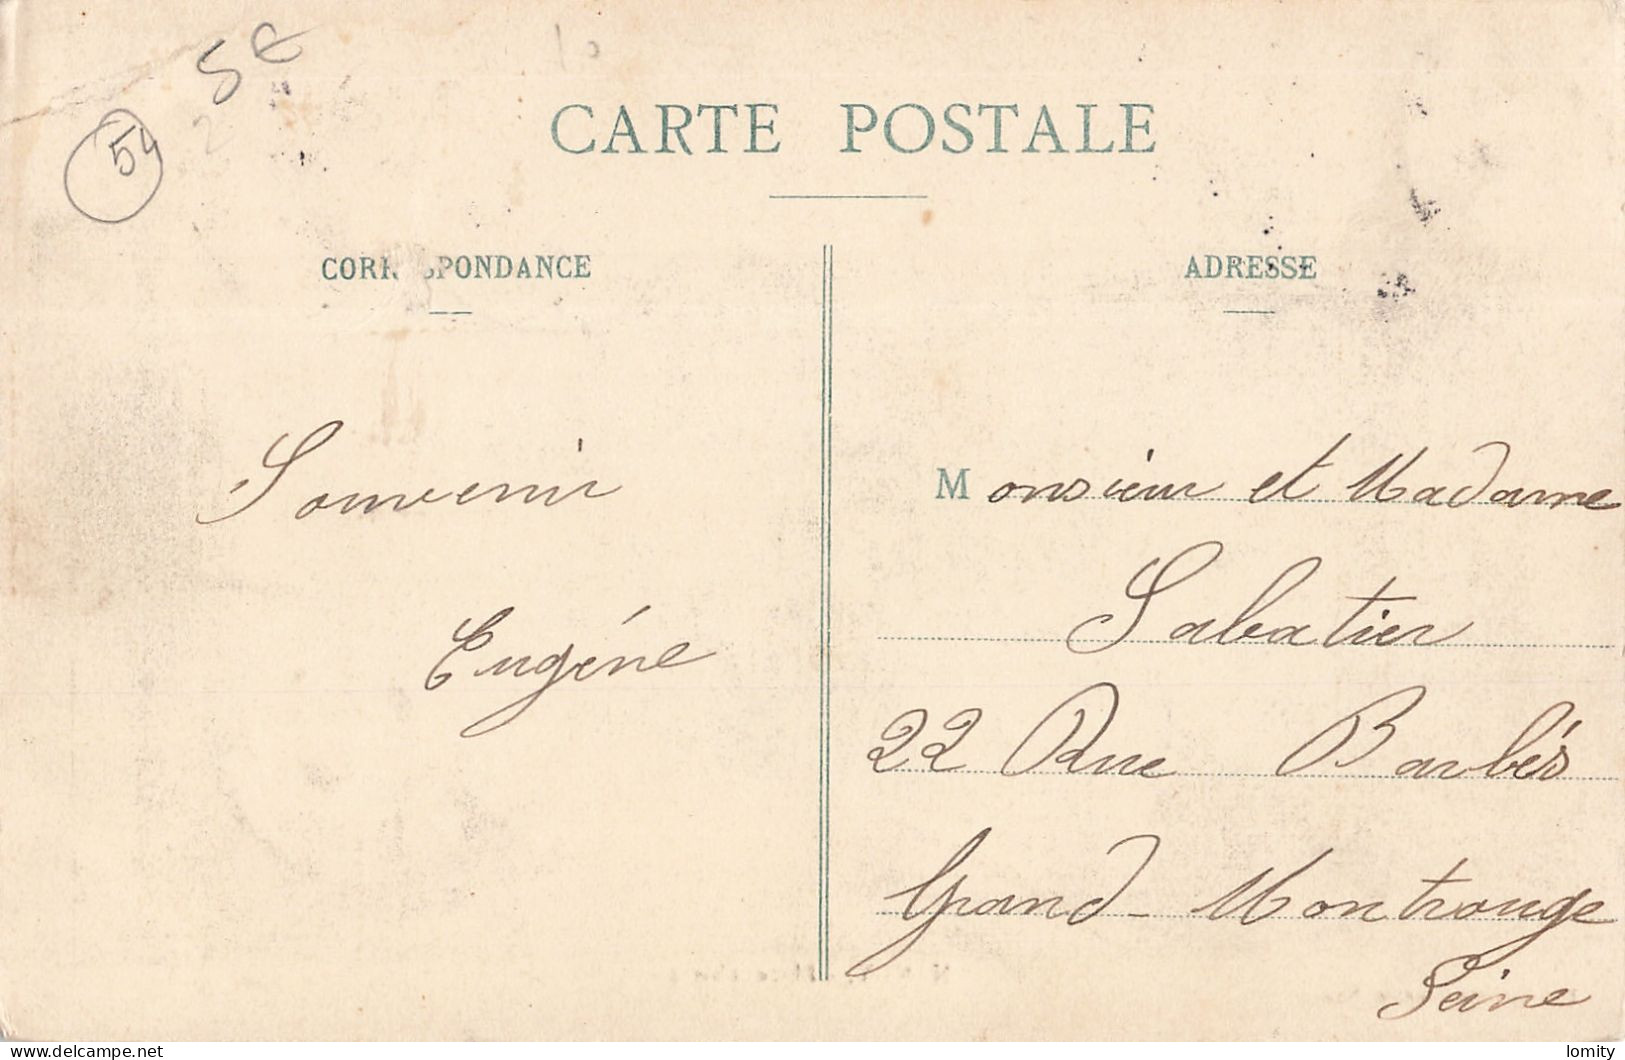 Destockage lot de 33 cartes postales CPA de Meurthe et Moselle Luneville Domjevin Toul Nancy Longwy Bas Pont à Mousson